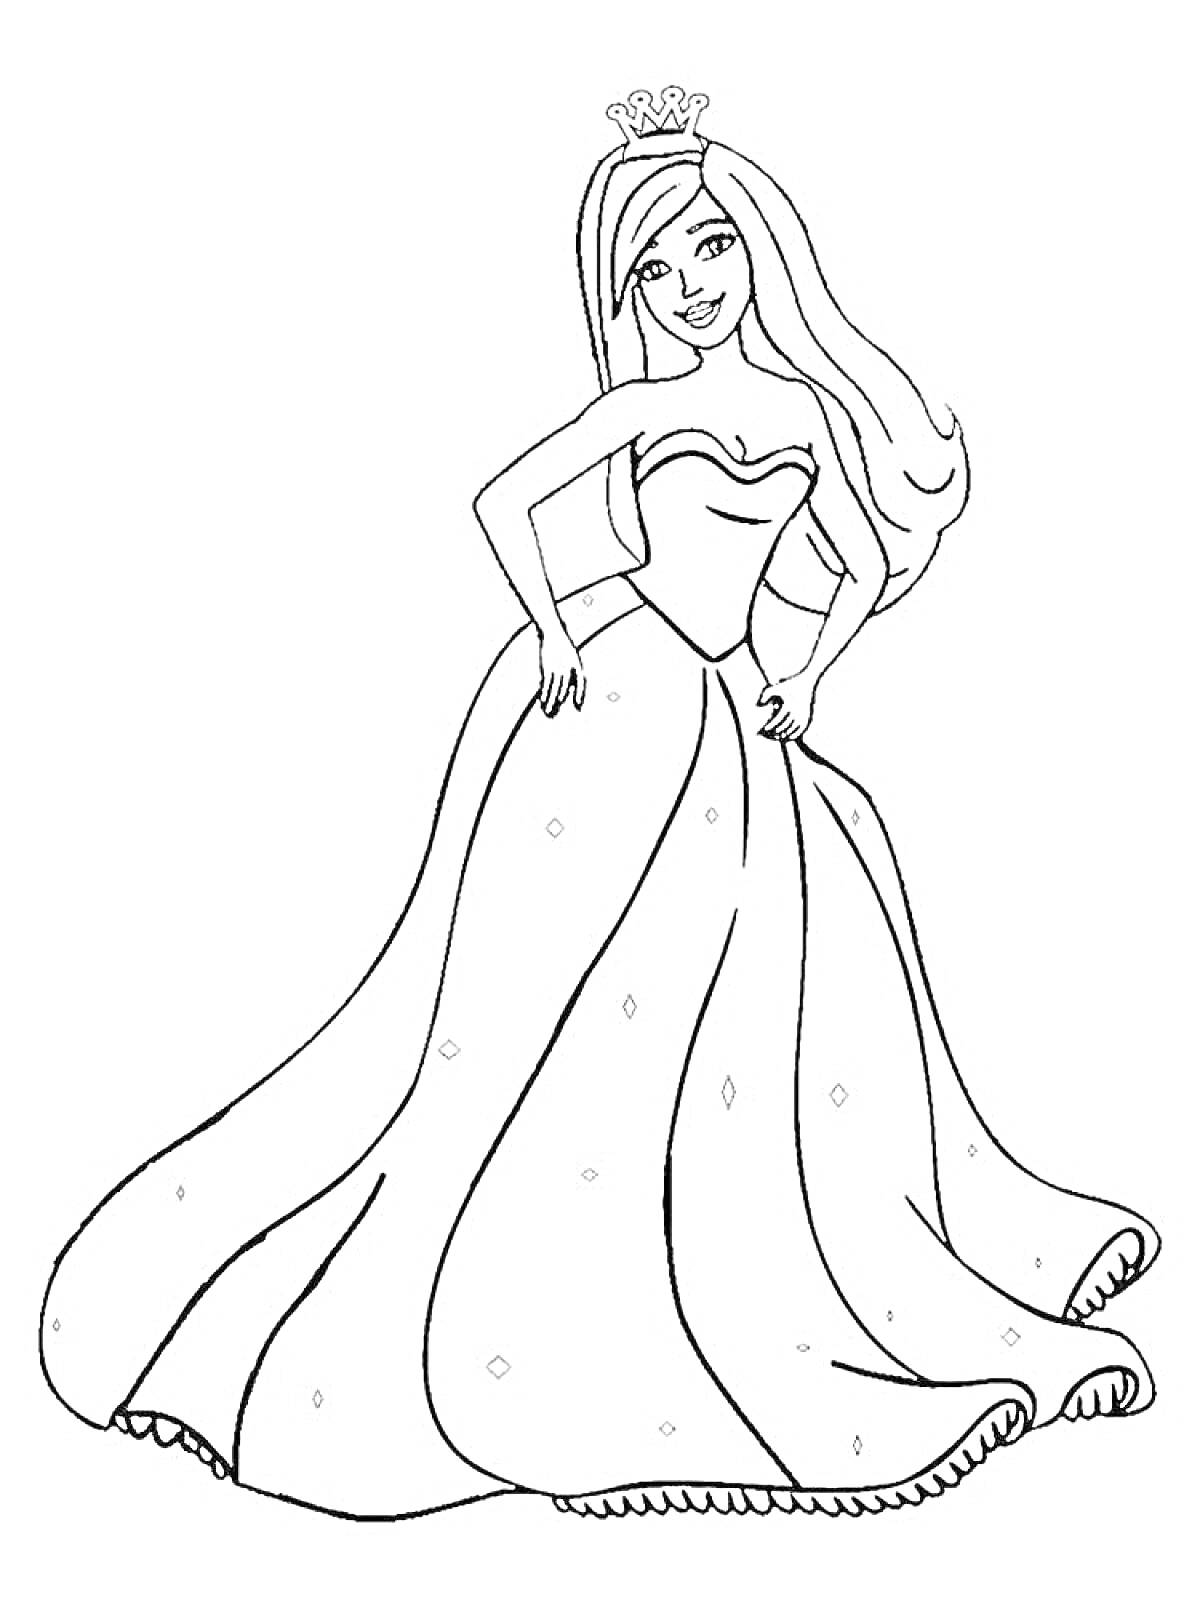 Раскраска Принцесса в красивом длинном платье с короной на голове